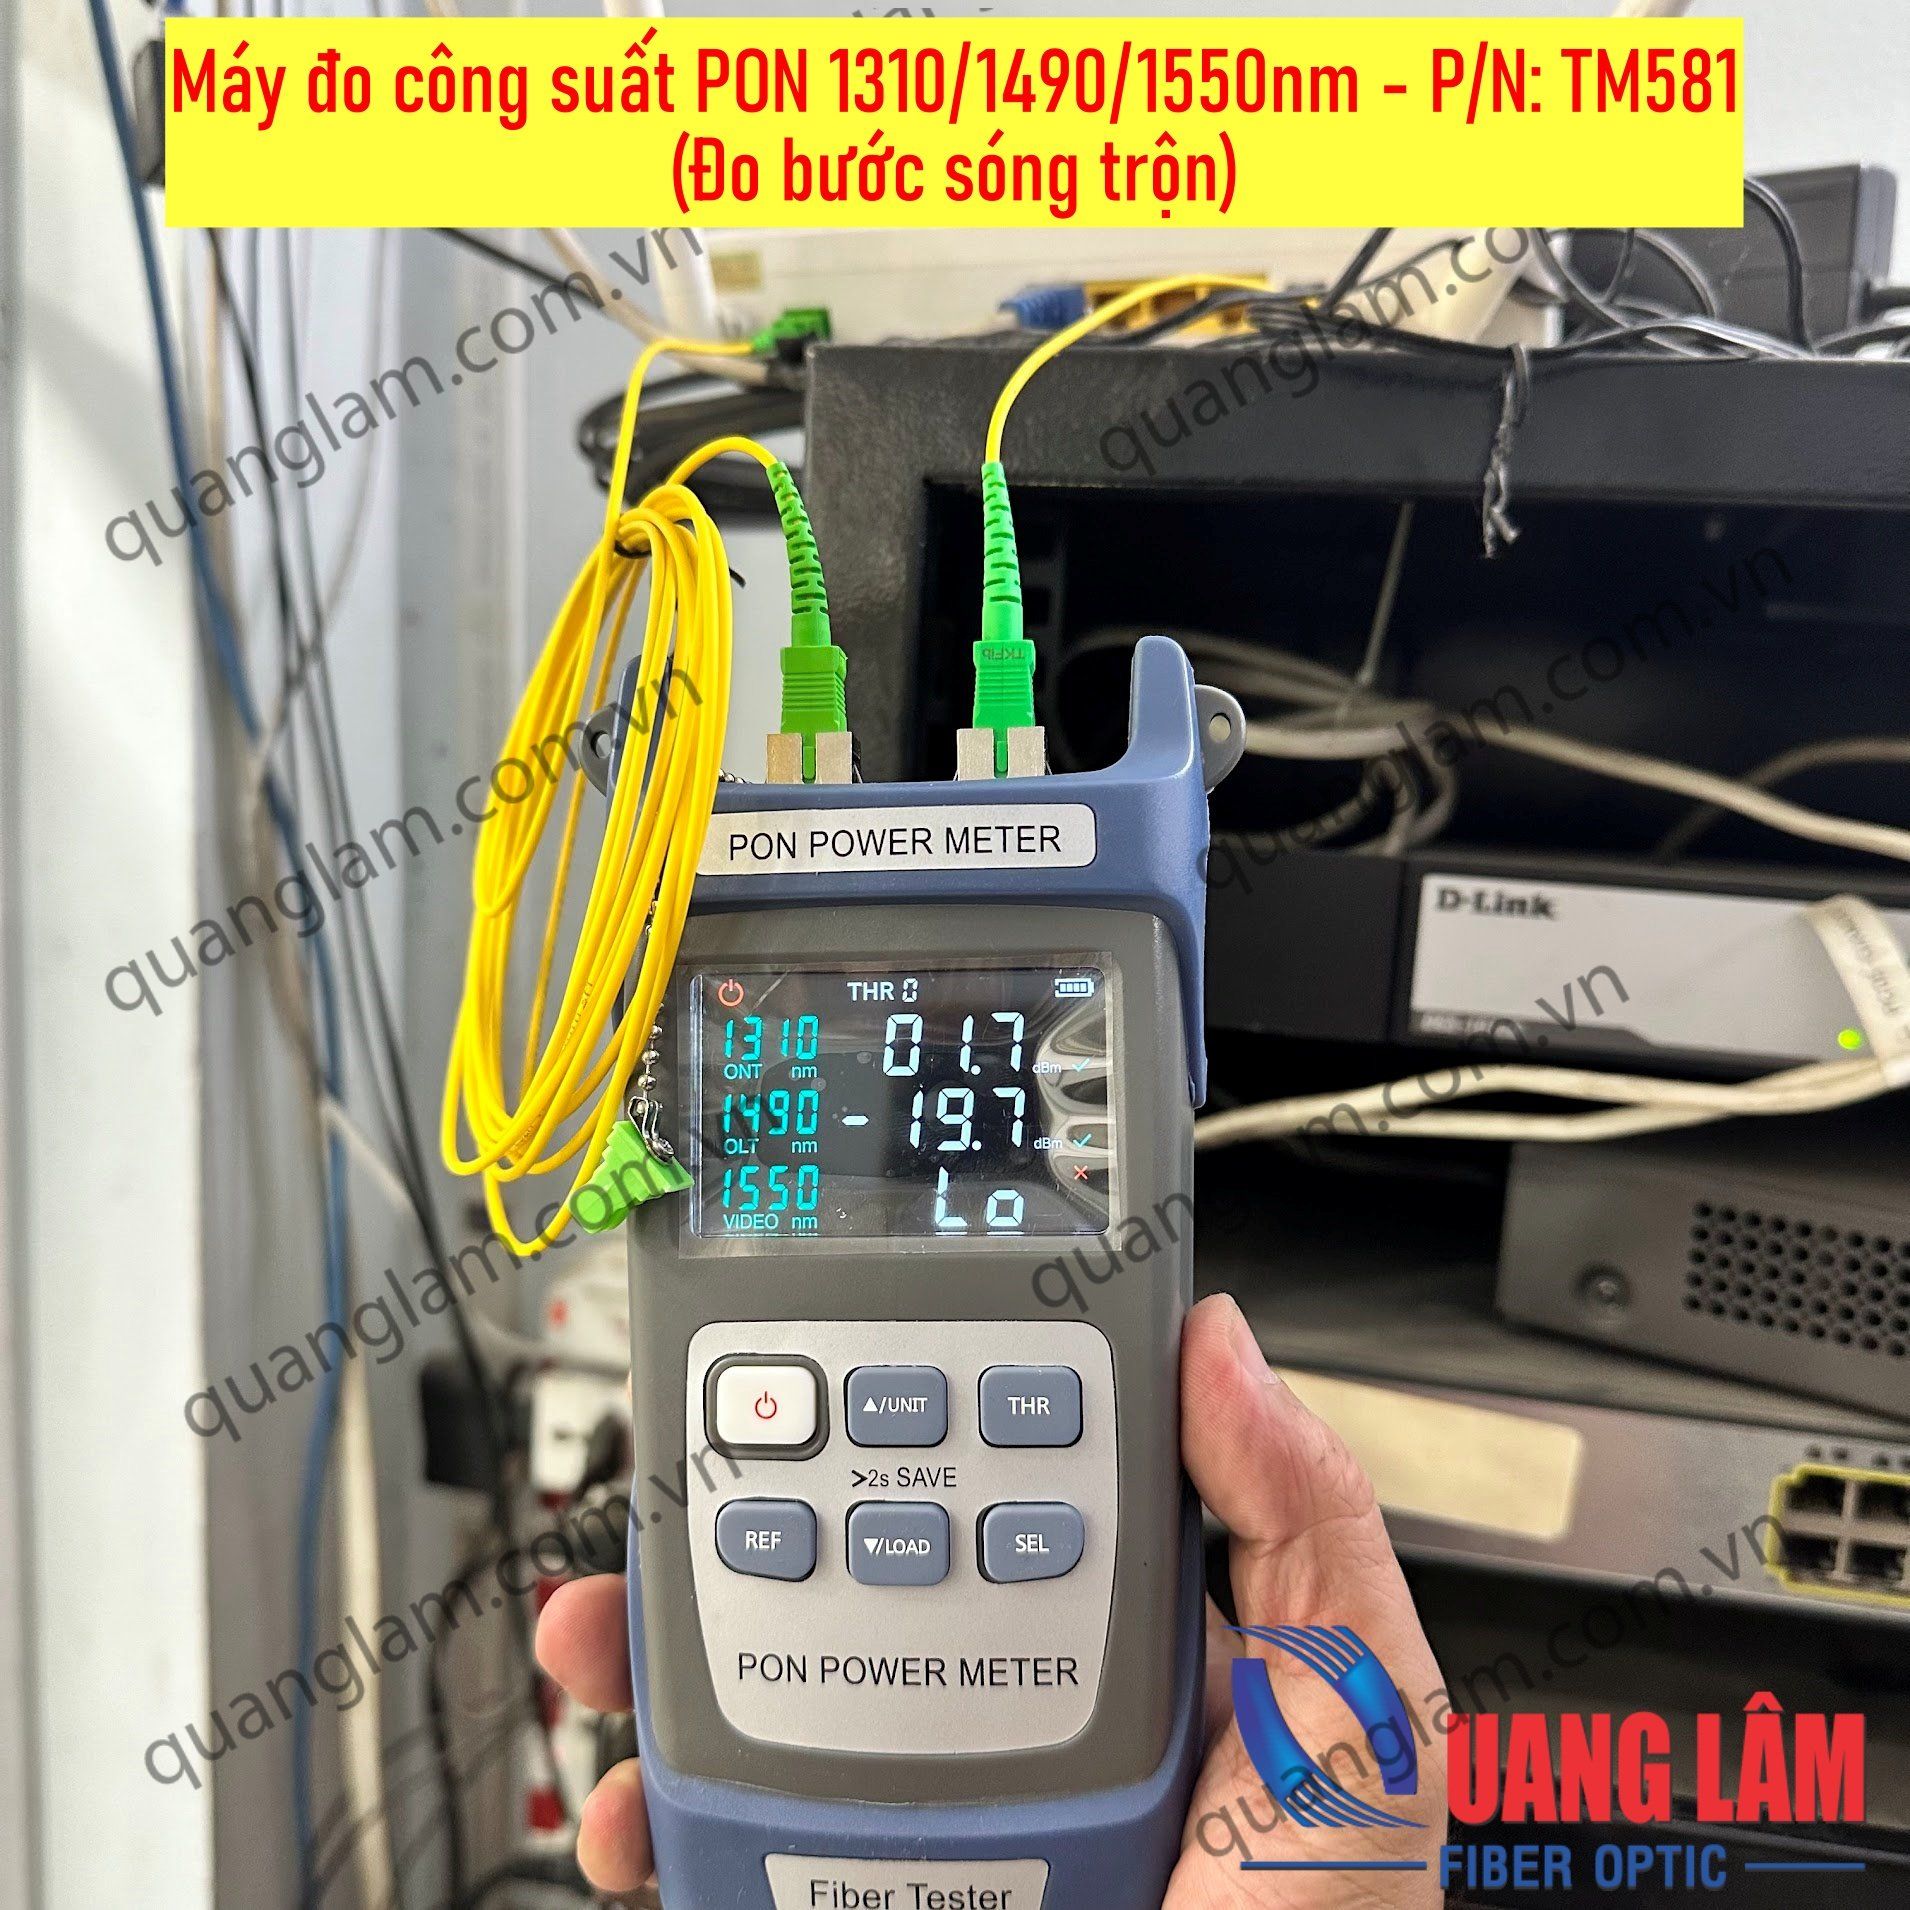 Máy đo công suất PON 1310/1490/1550nm - P/N: TM581 (Đo bước sóng trộn)